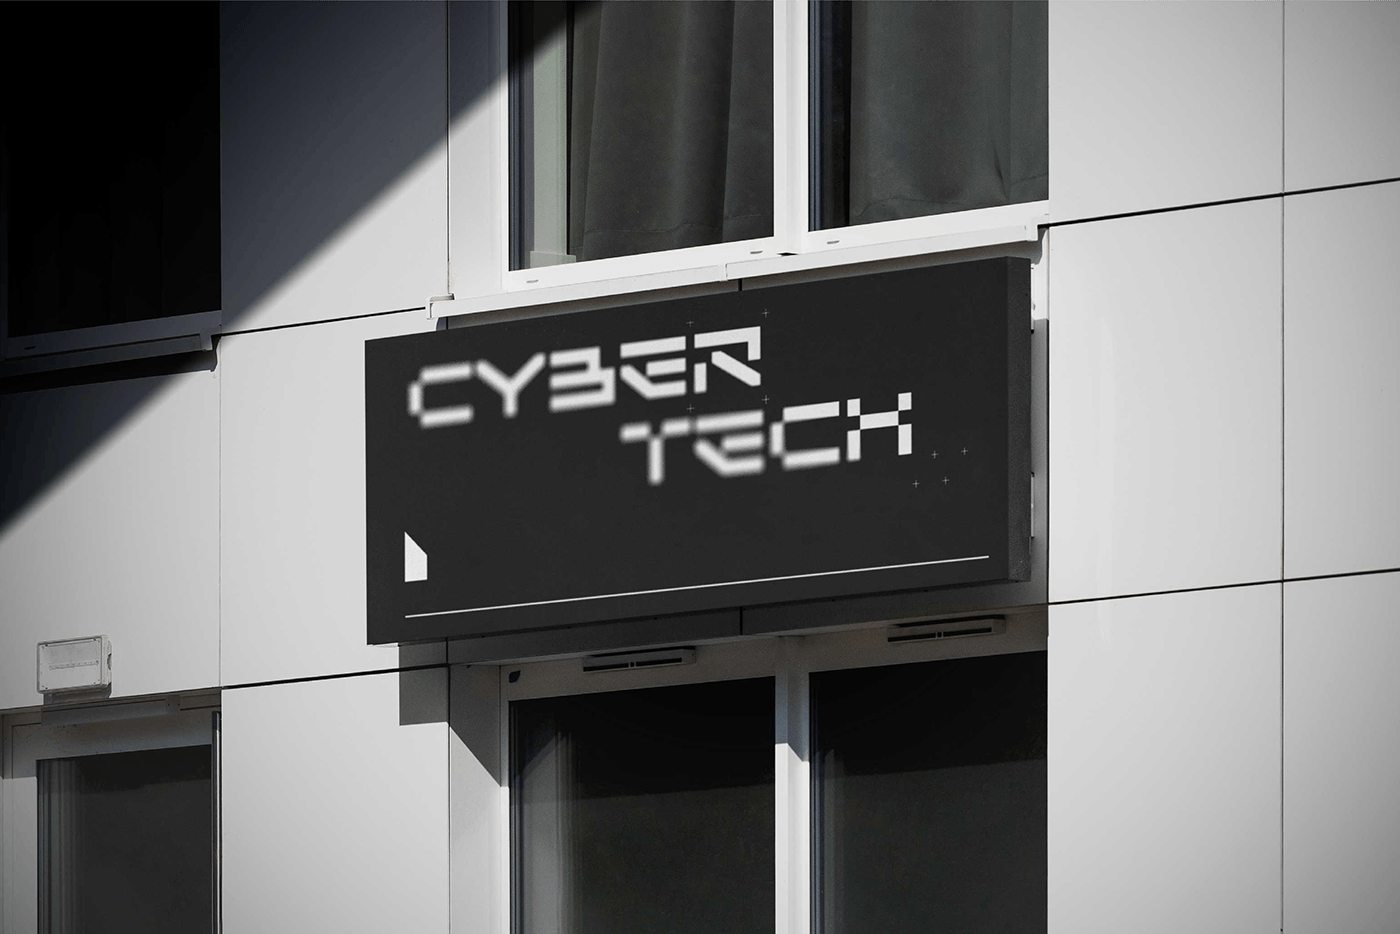 futuristic Cyberpunk modern font Scifi